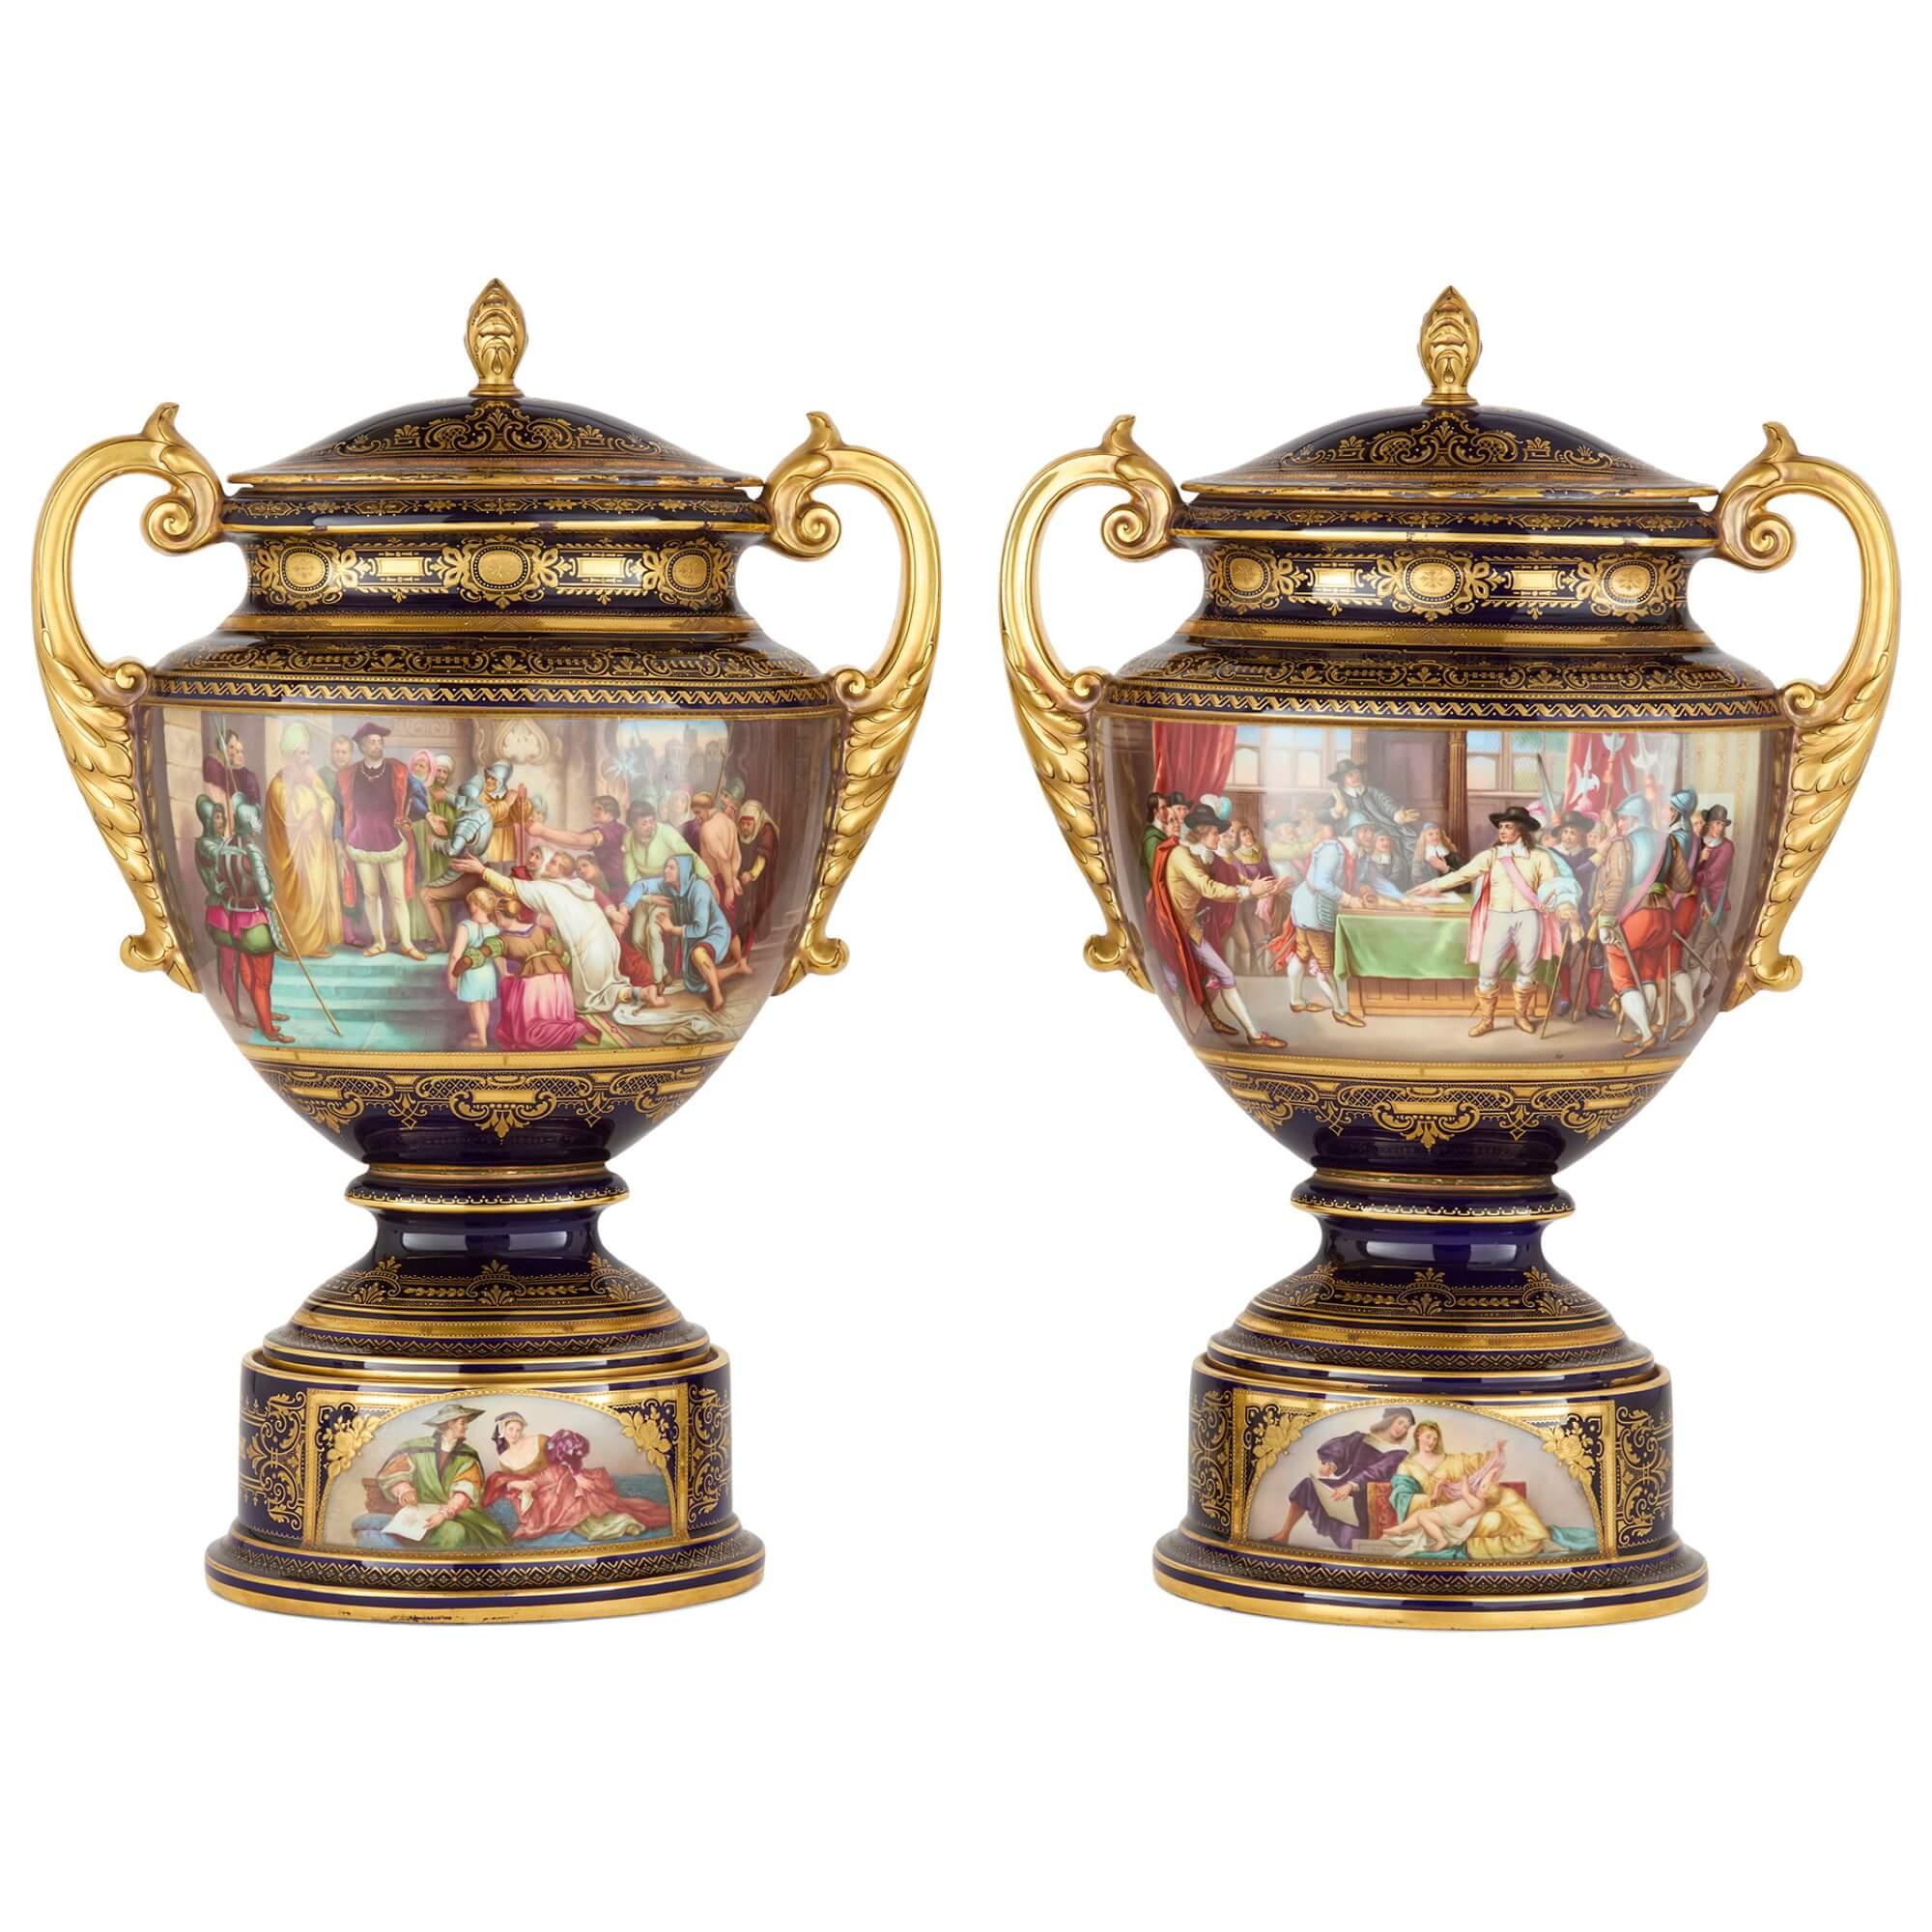 Paar große Deckelvasen aus königlichem Wiener Porzellan 
Österreich, 19. Jahrhundert
Höhe 61cm, Breite 42cm, Tiefe 19cm

Dieses außergewöhnliche Vasenpaar verbindet eine faszinierende Form mit einem prächtigen bemalten Dekor.

Die beiden Vasen haben